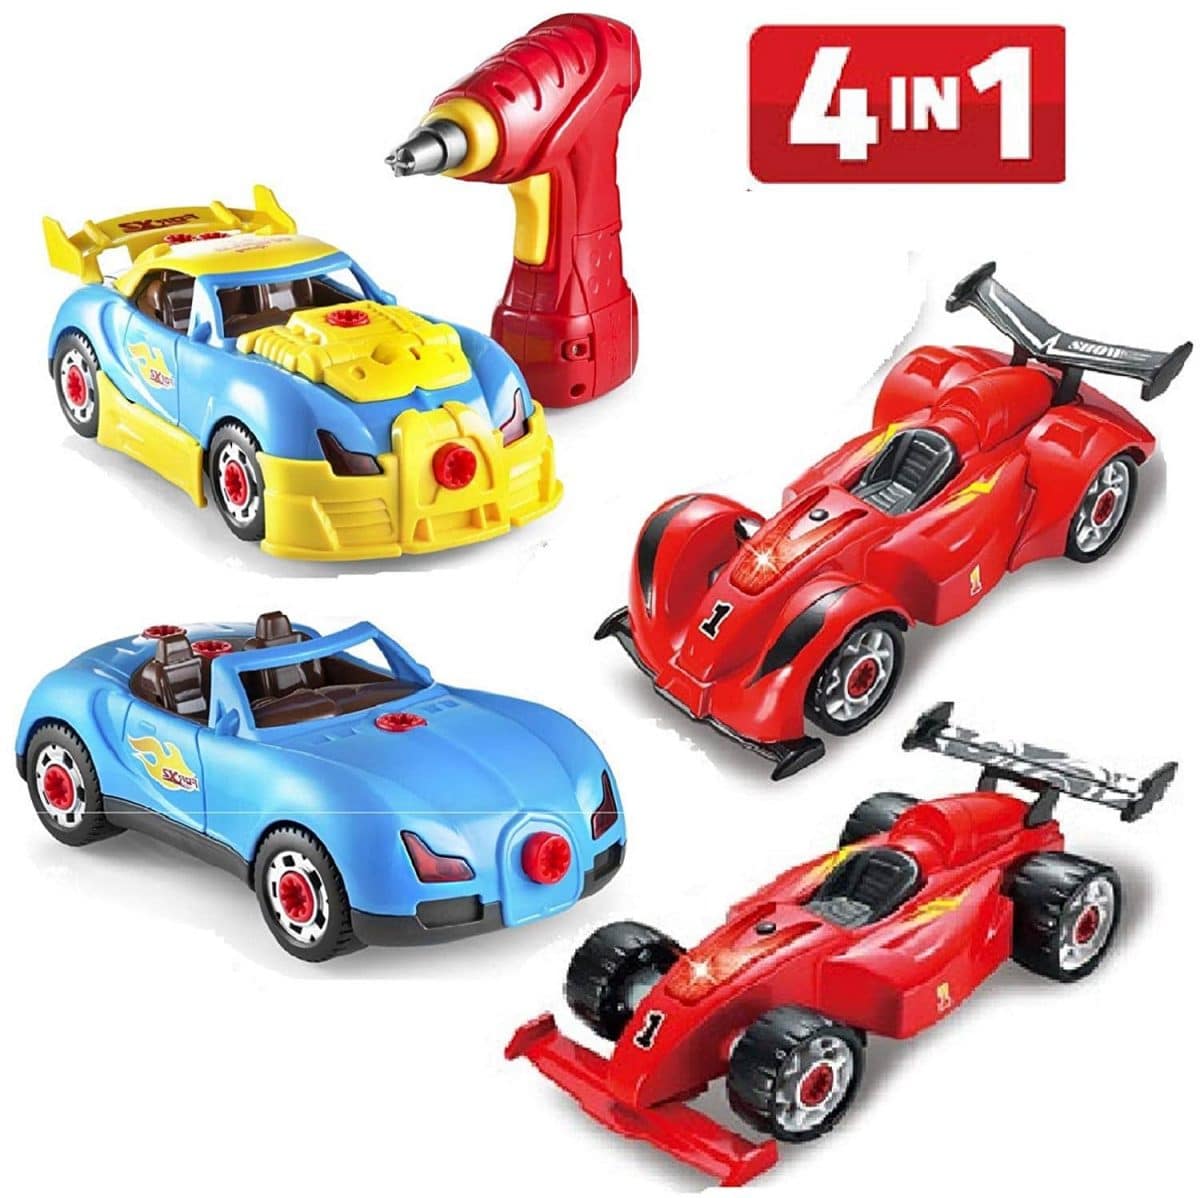 toy car toy car toy car toy car toy car